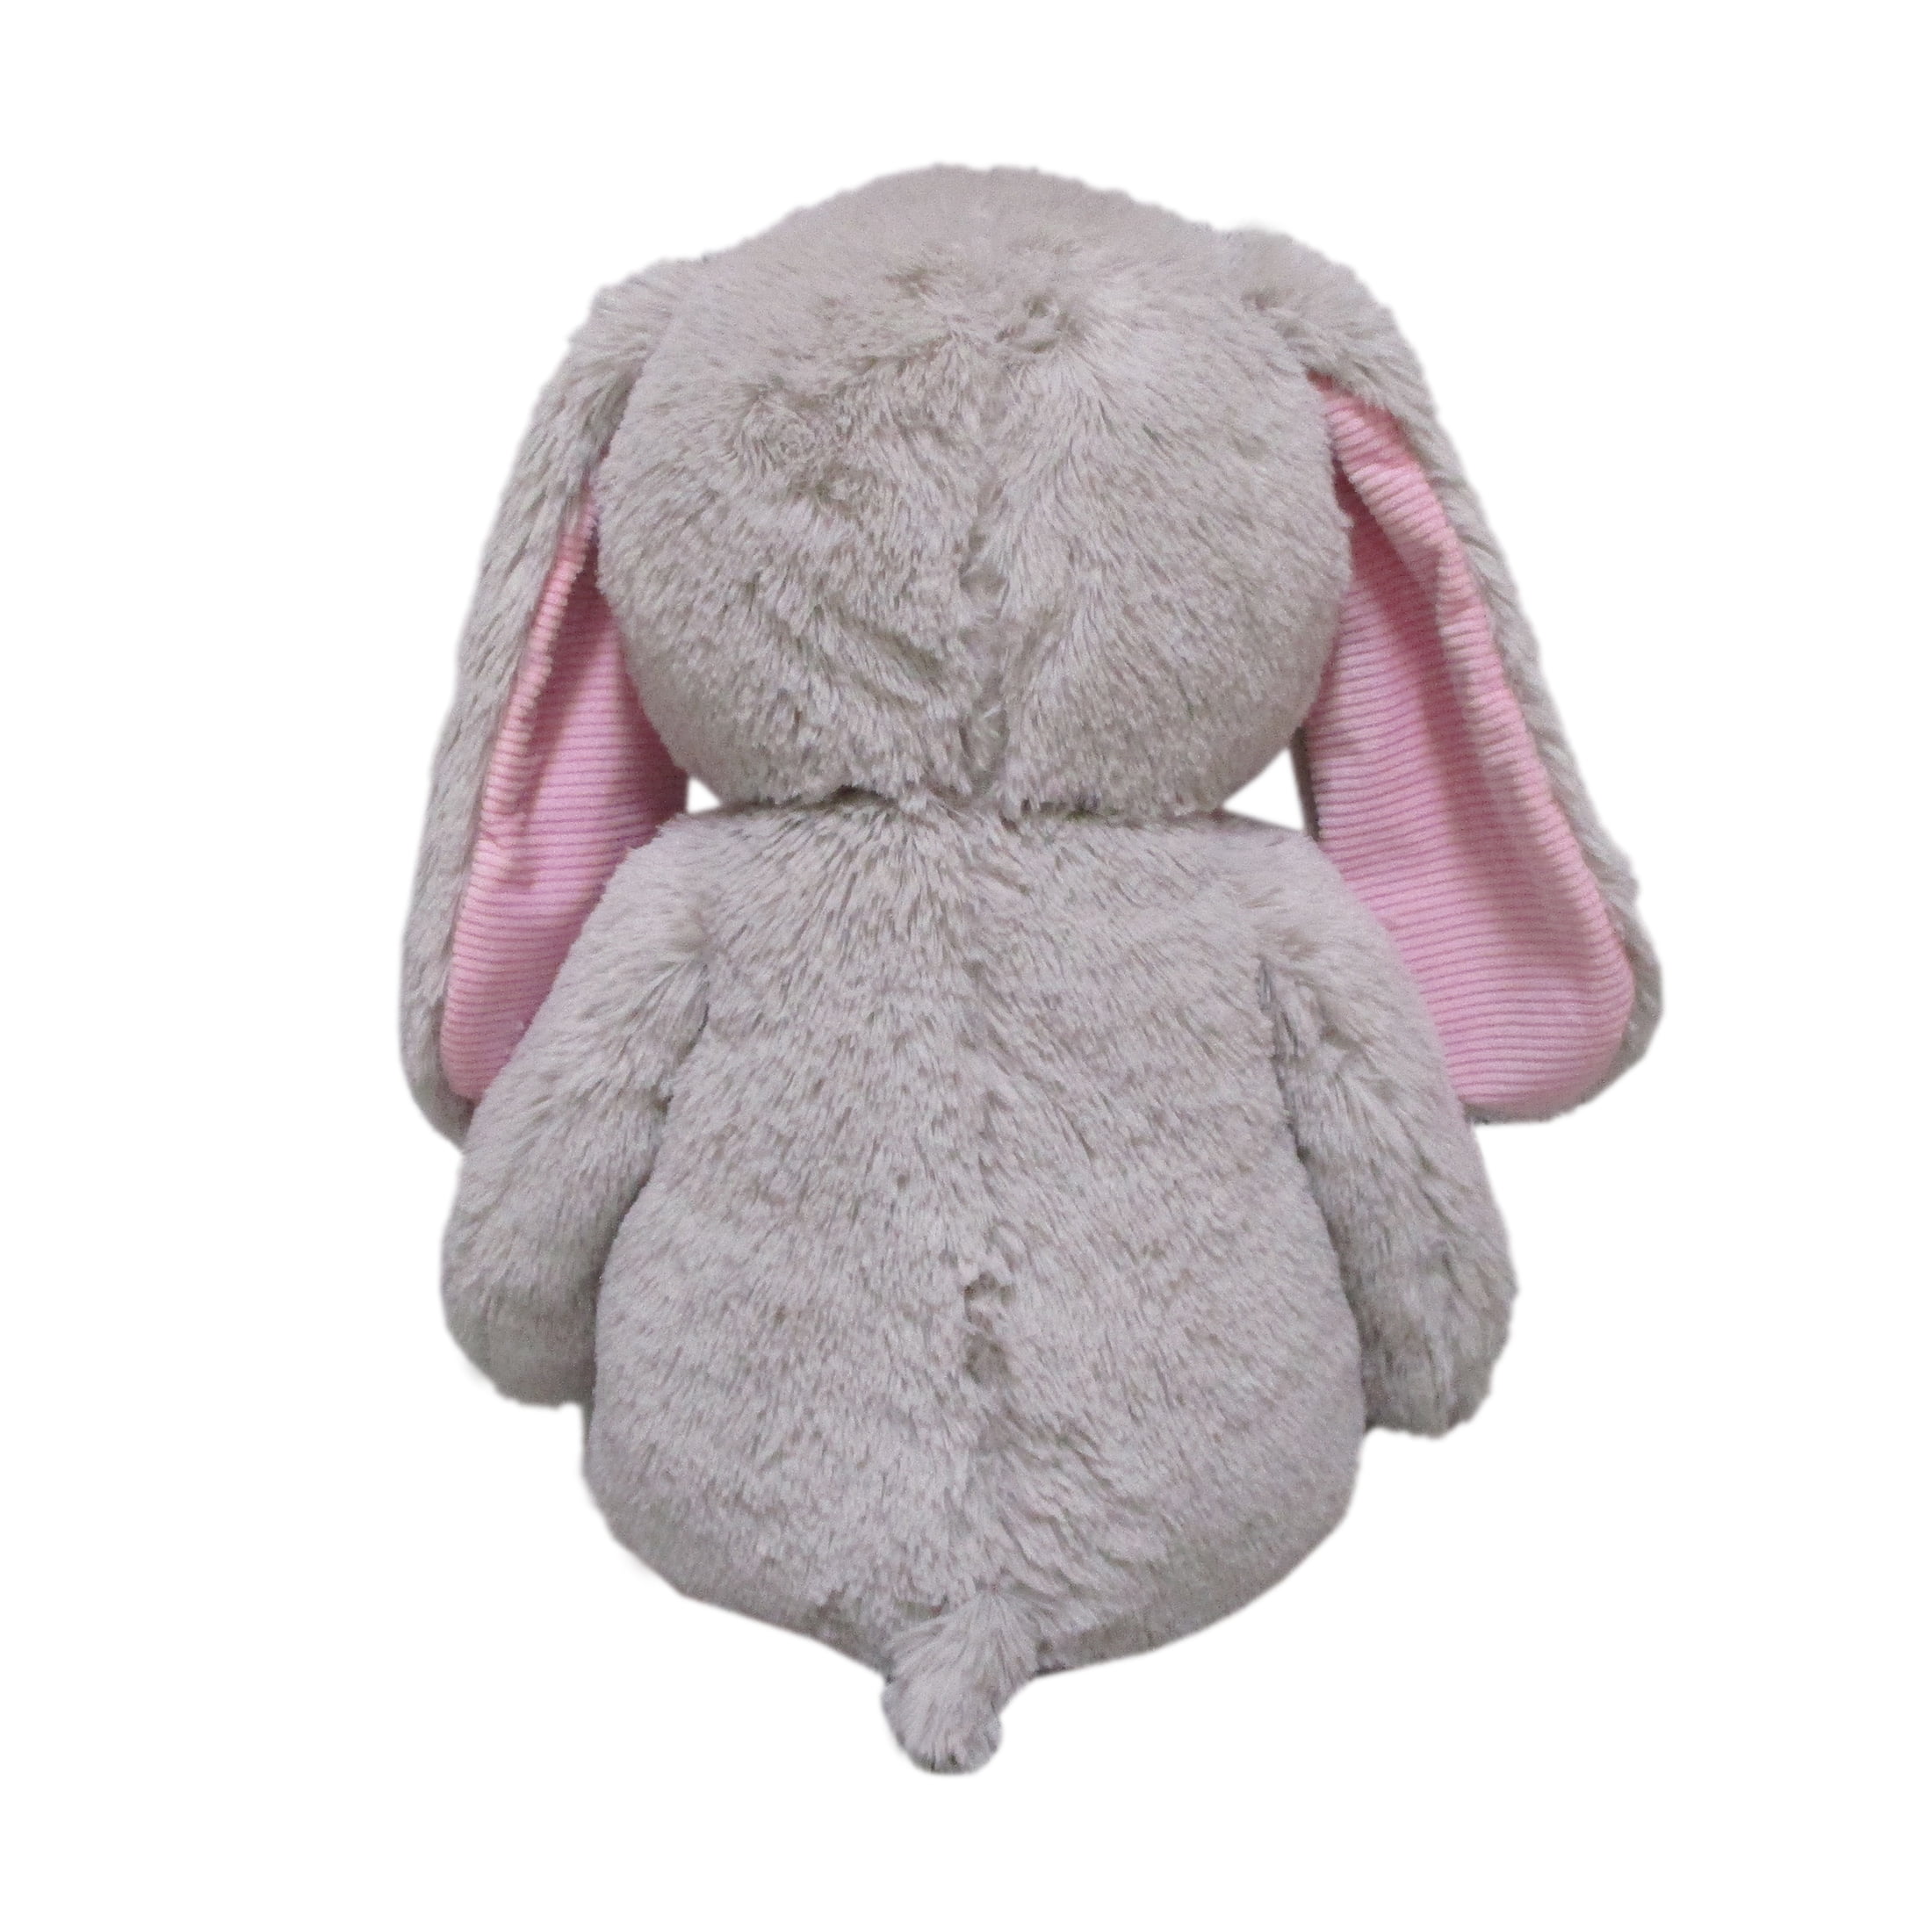 Giant grey rabbit plush • Magic Plush